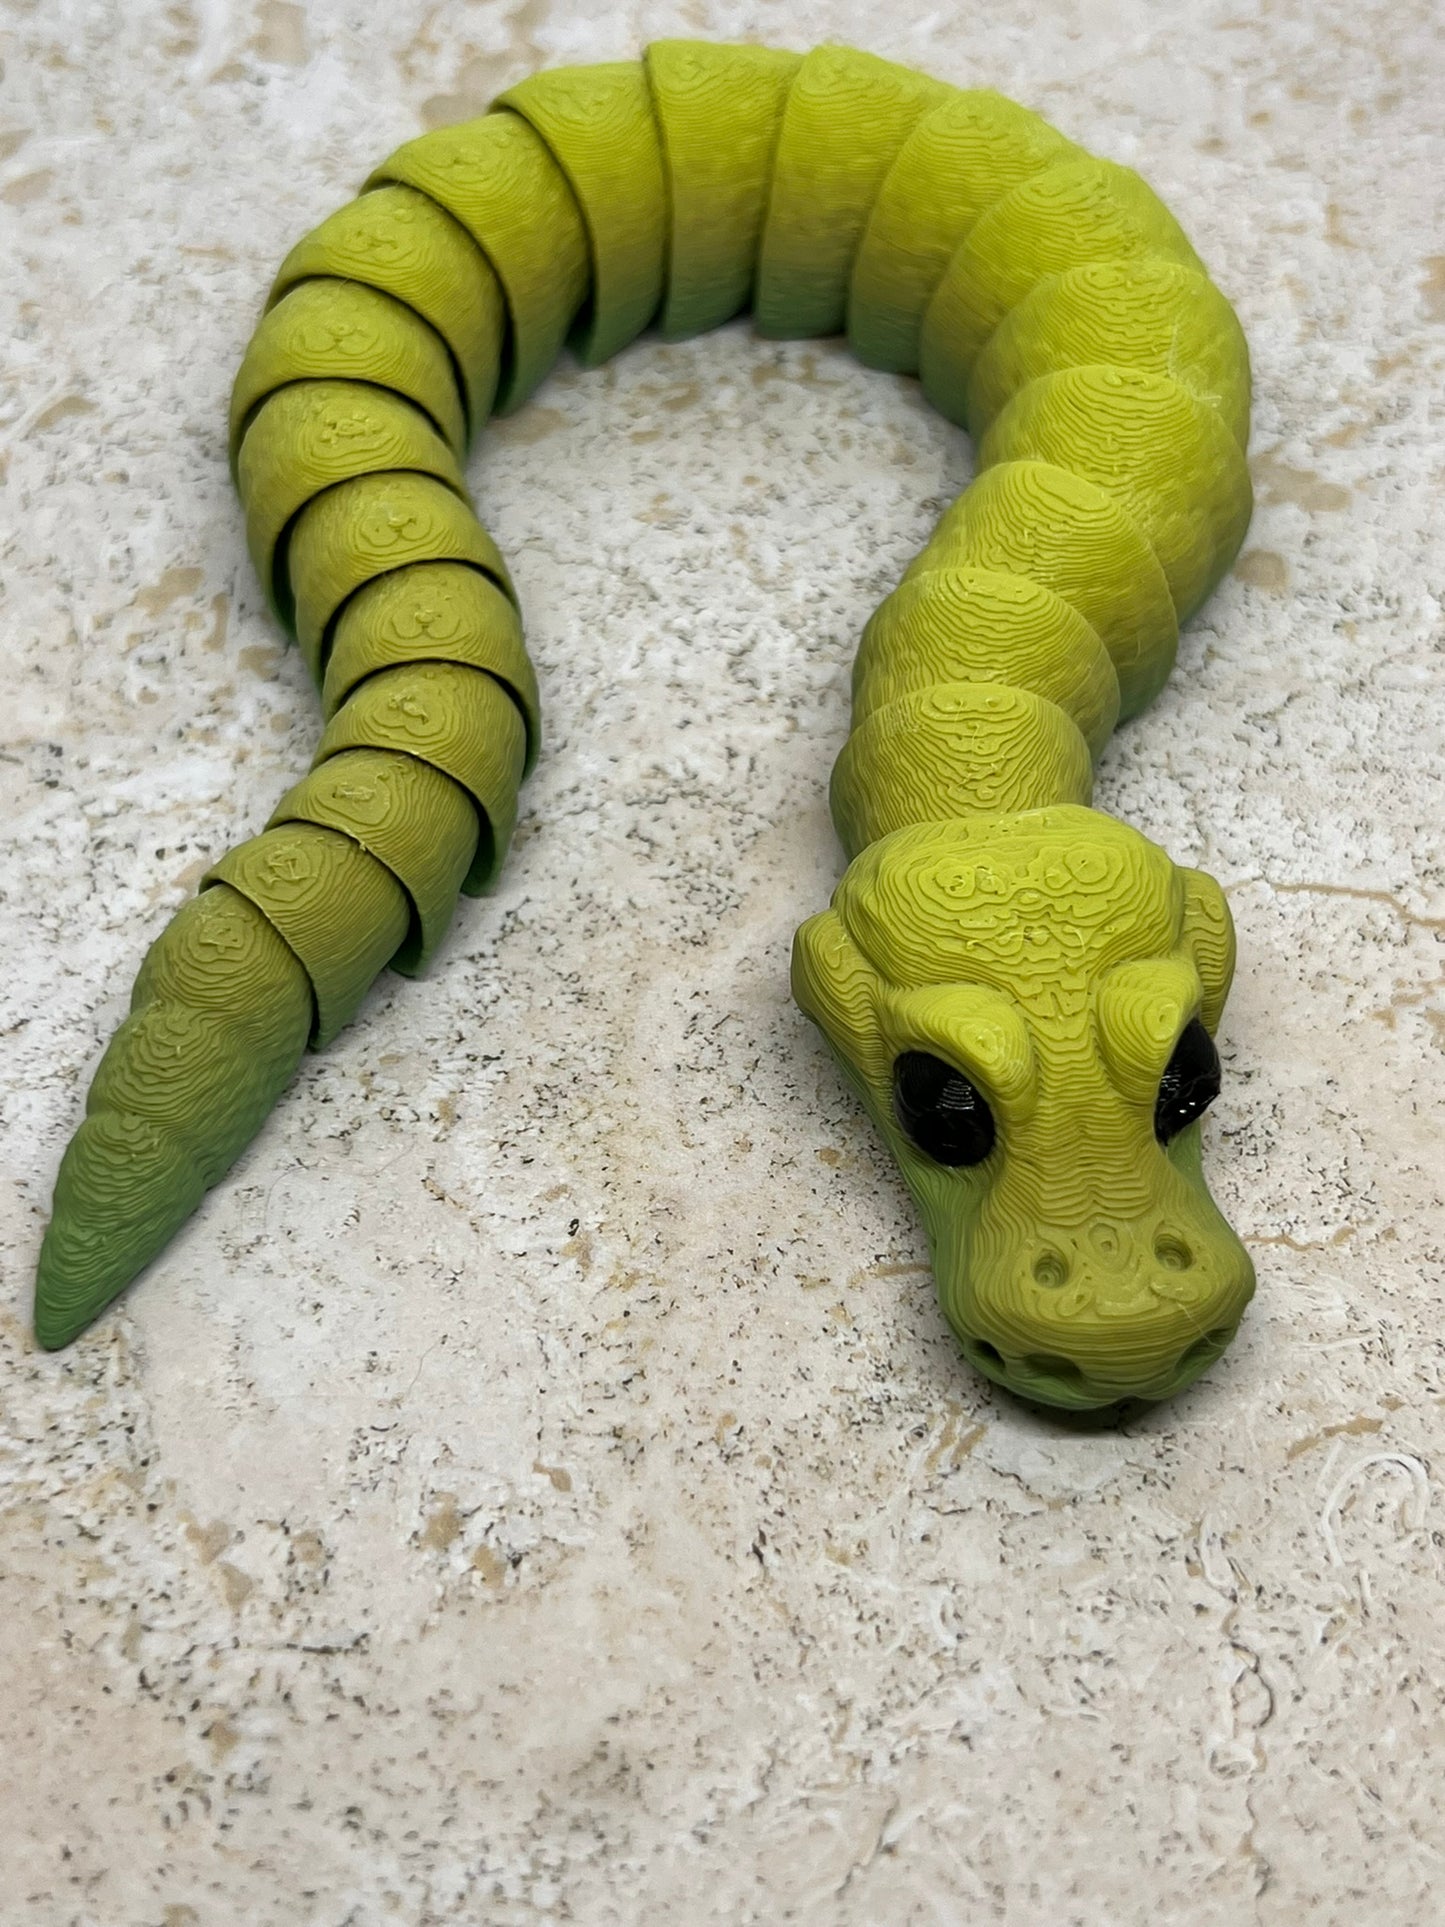 Snake - Young Ball Python